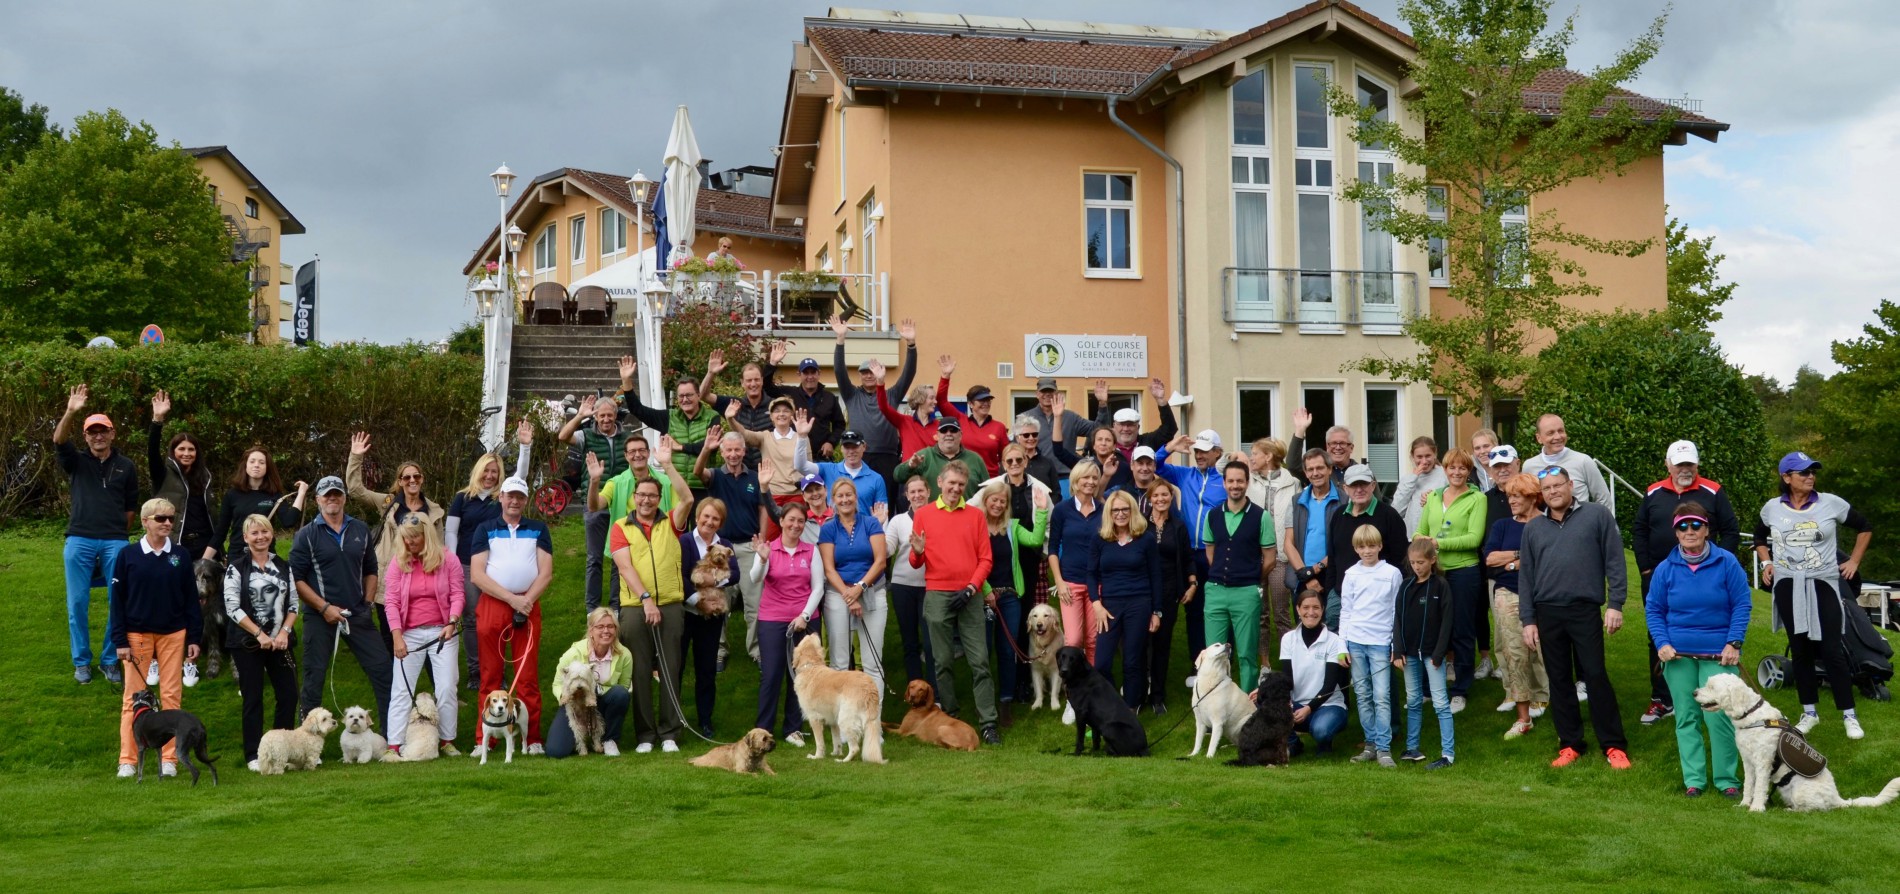 Golfen mit Hund für einen guten Zweck 